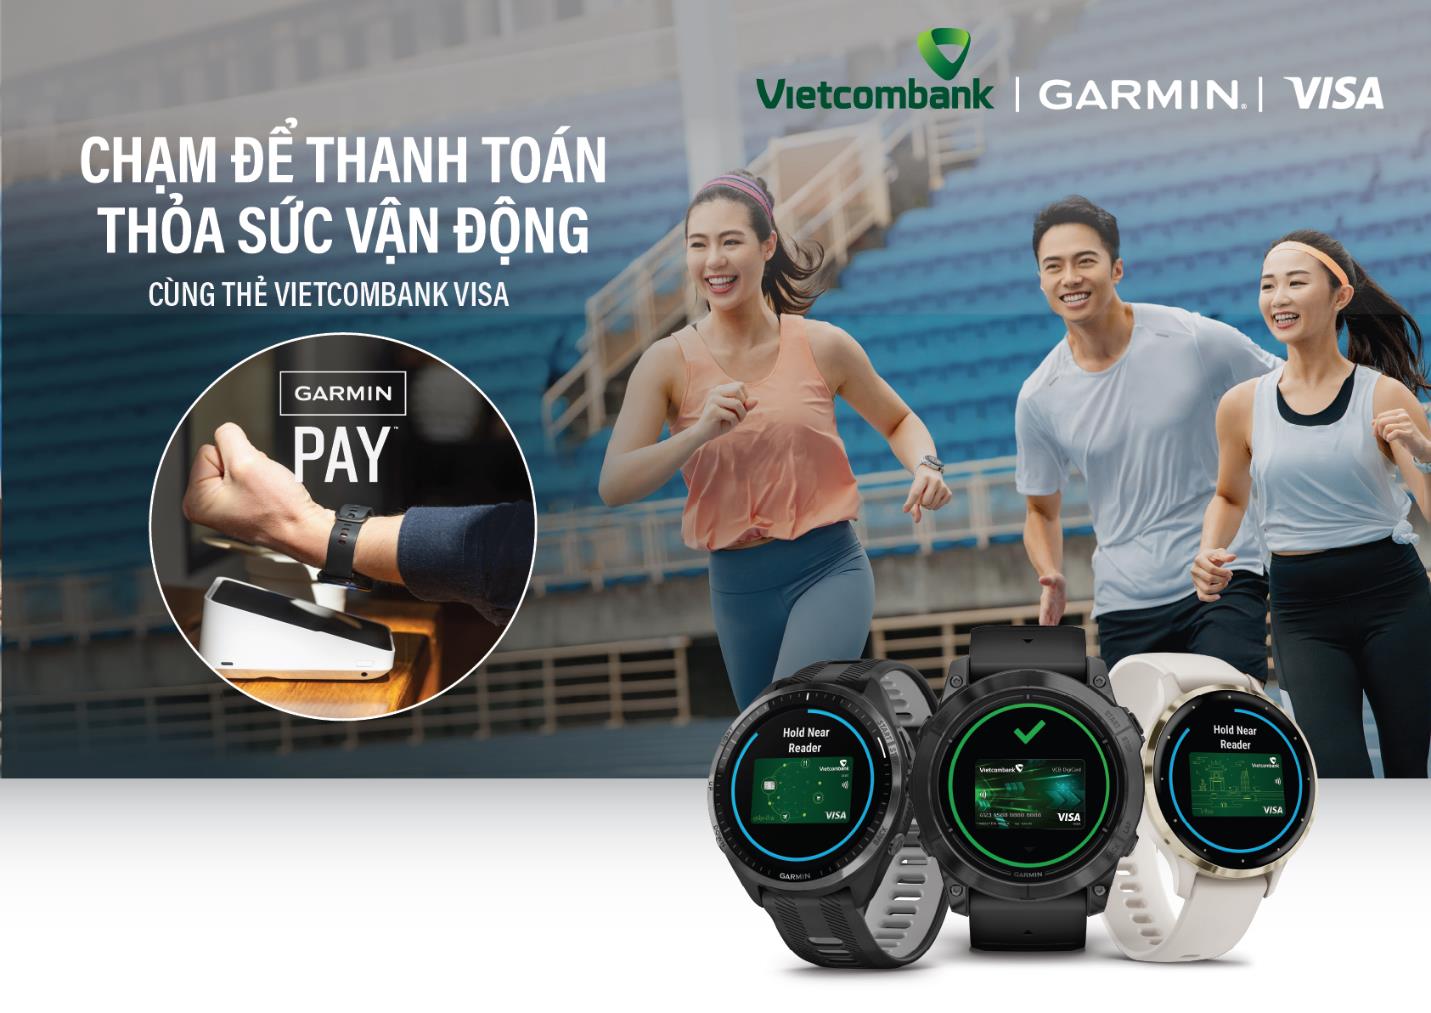 Vietcombank triển khai thanh toán một chạm Garmin Pay cho thẻ Visa- Ảnh 1.